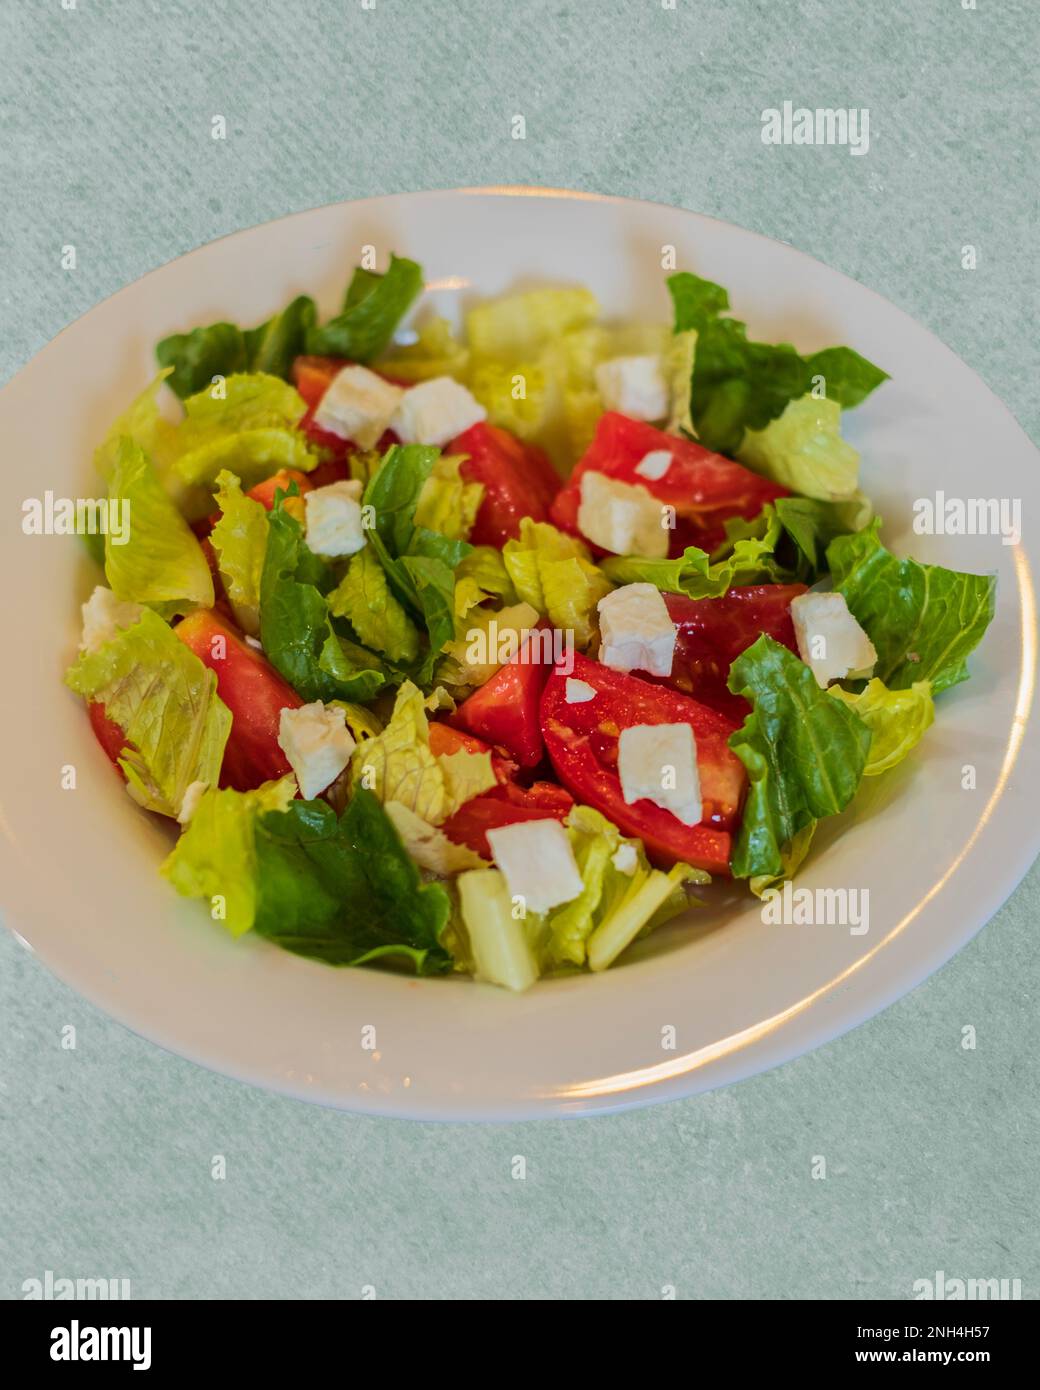 Une salade fraîche avec de la laitue romaine, des tomates coupées et du fromage feta dans un bol blanc. Gros plan, par le dessus. Banque D'Images